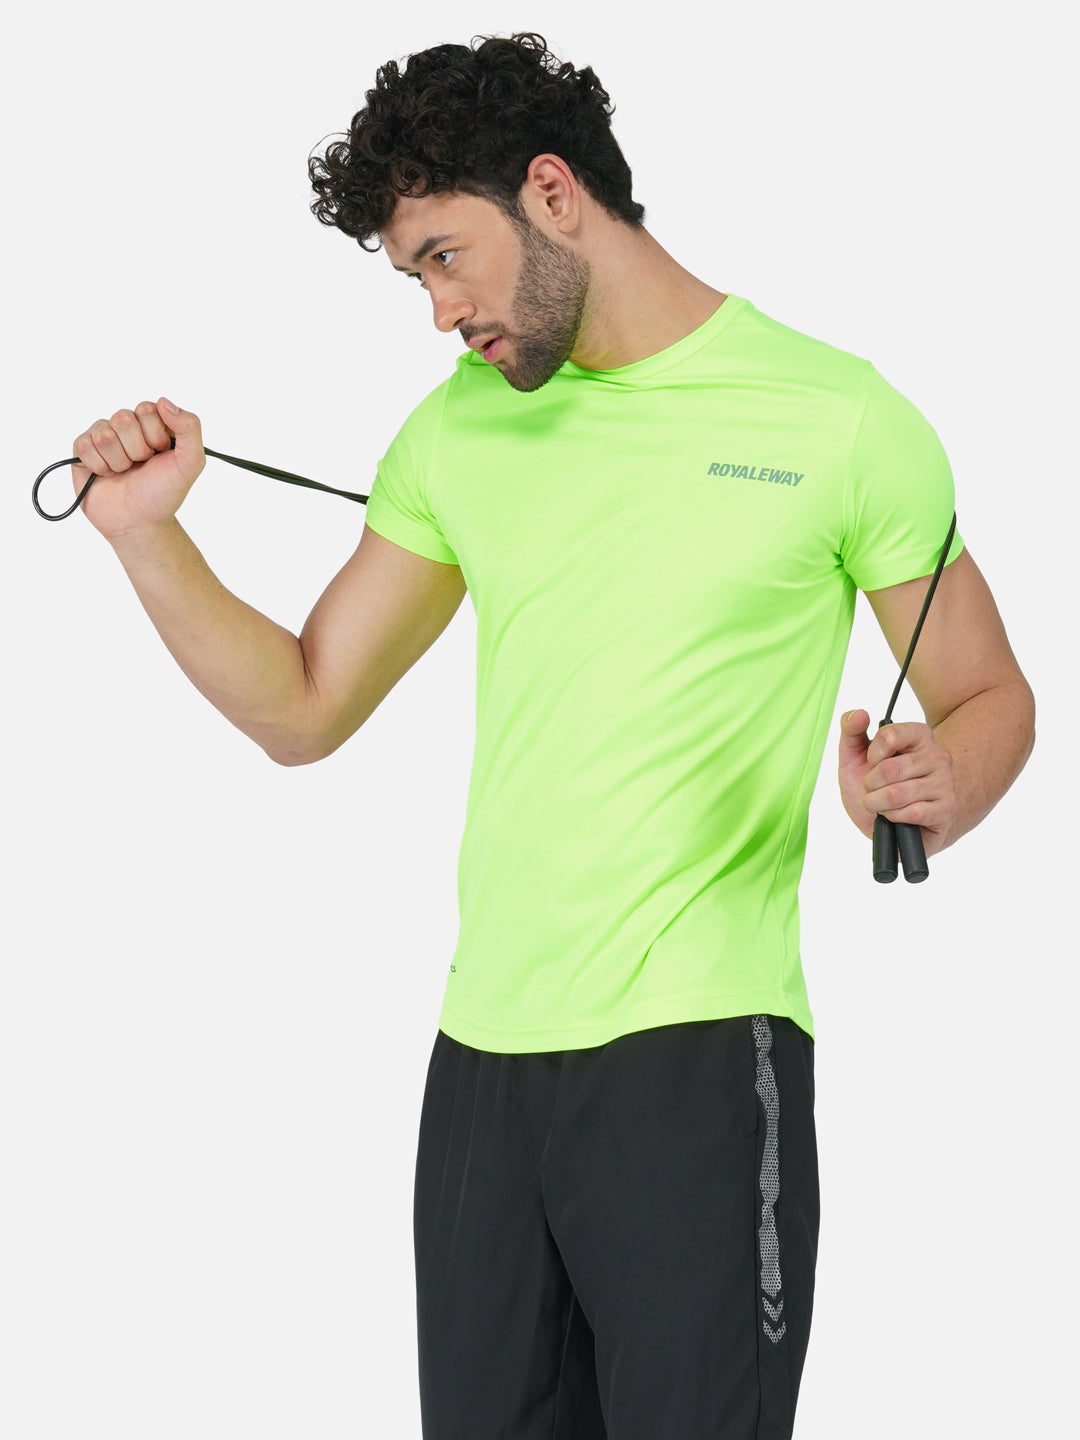 DriSOFT T Shirt Fluorescent Green Men RWM2018